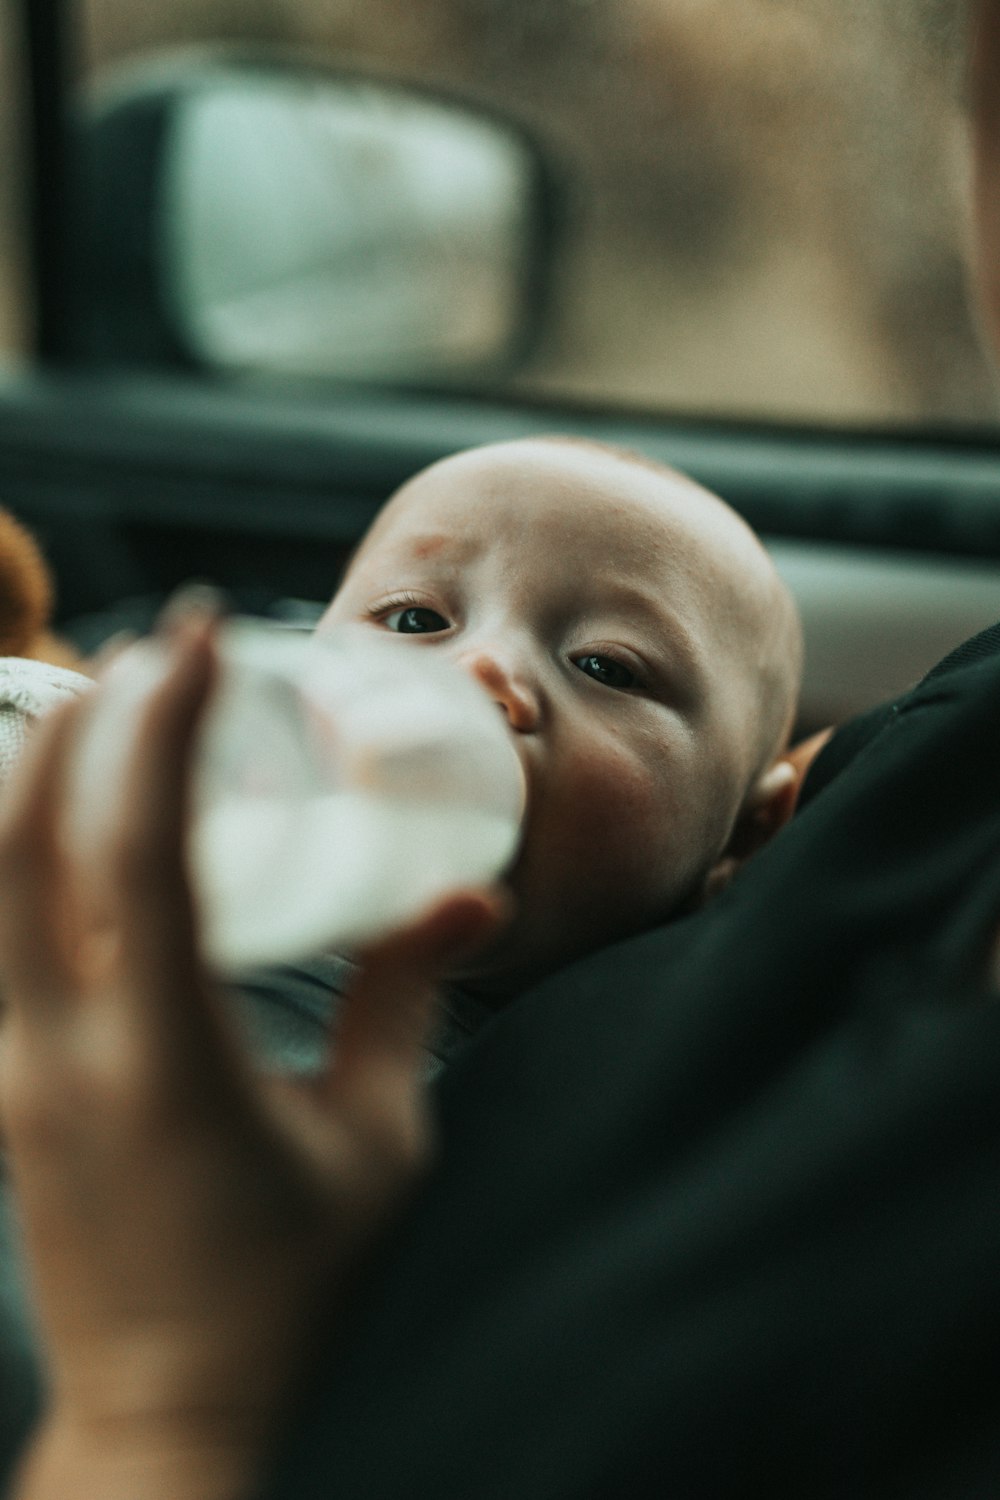 bebê na camisa azul bebendo leite da mamadeira de alimentação